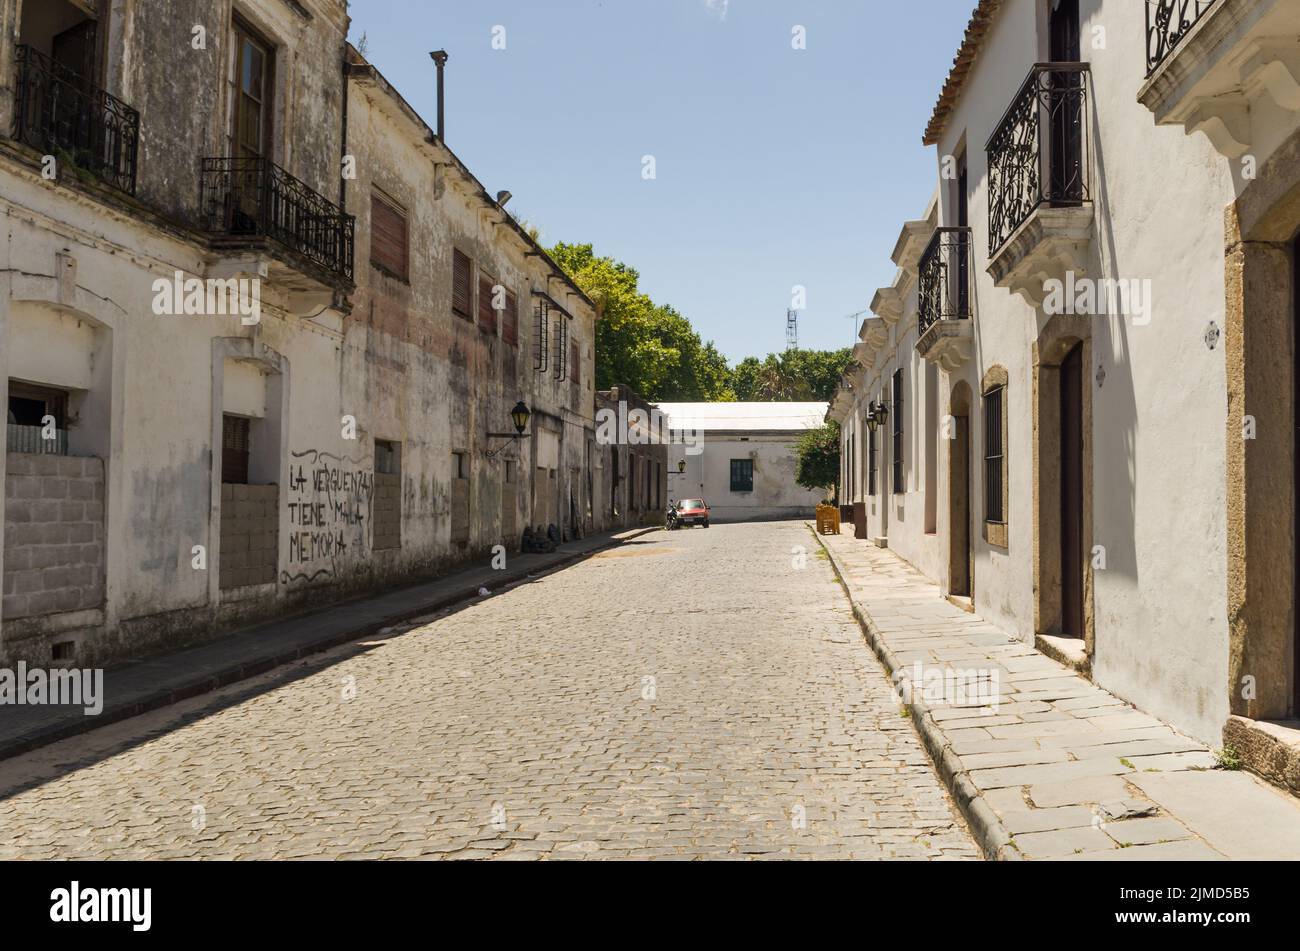 Colonia del Sacramento, Uruguay - 26 dicembre 2015: Architettura coloniale portoghese e antico co Foto Stock